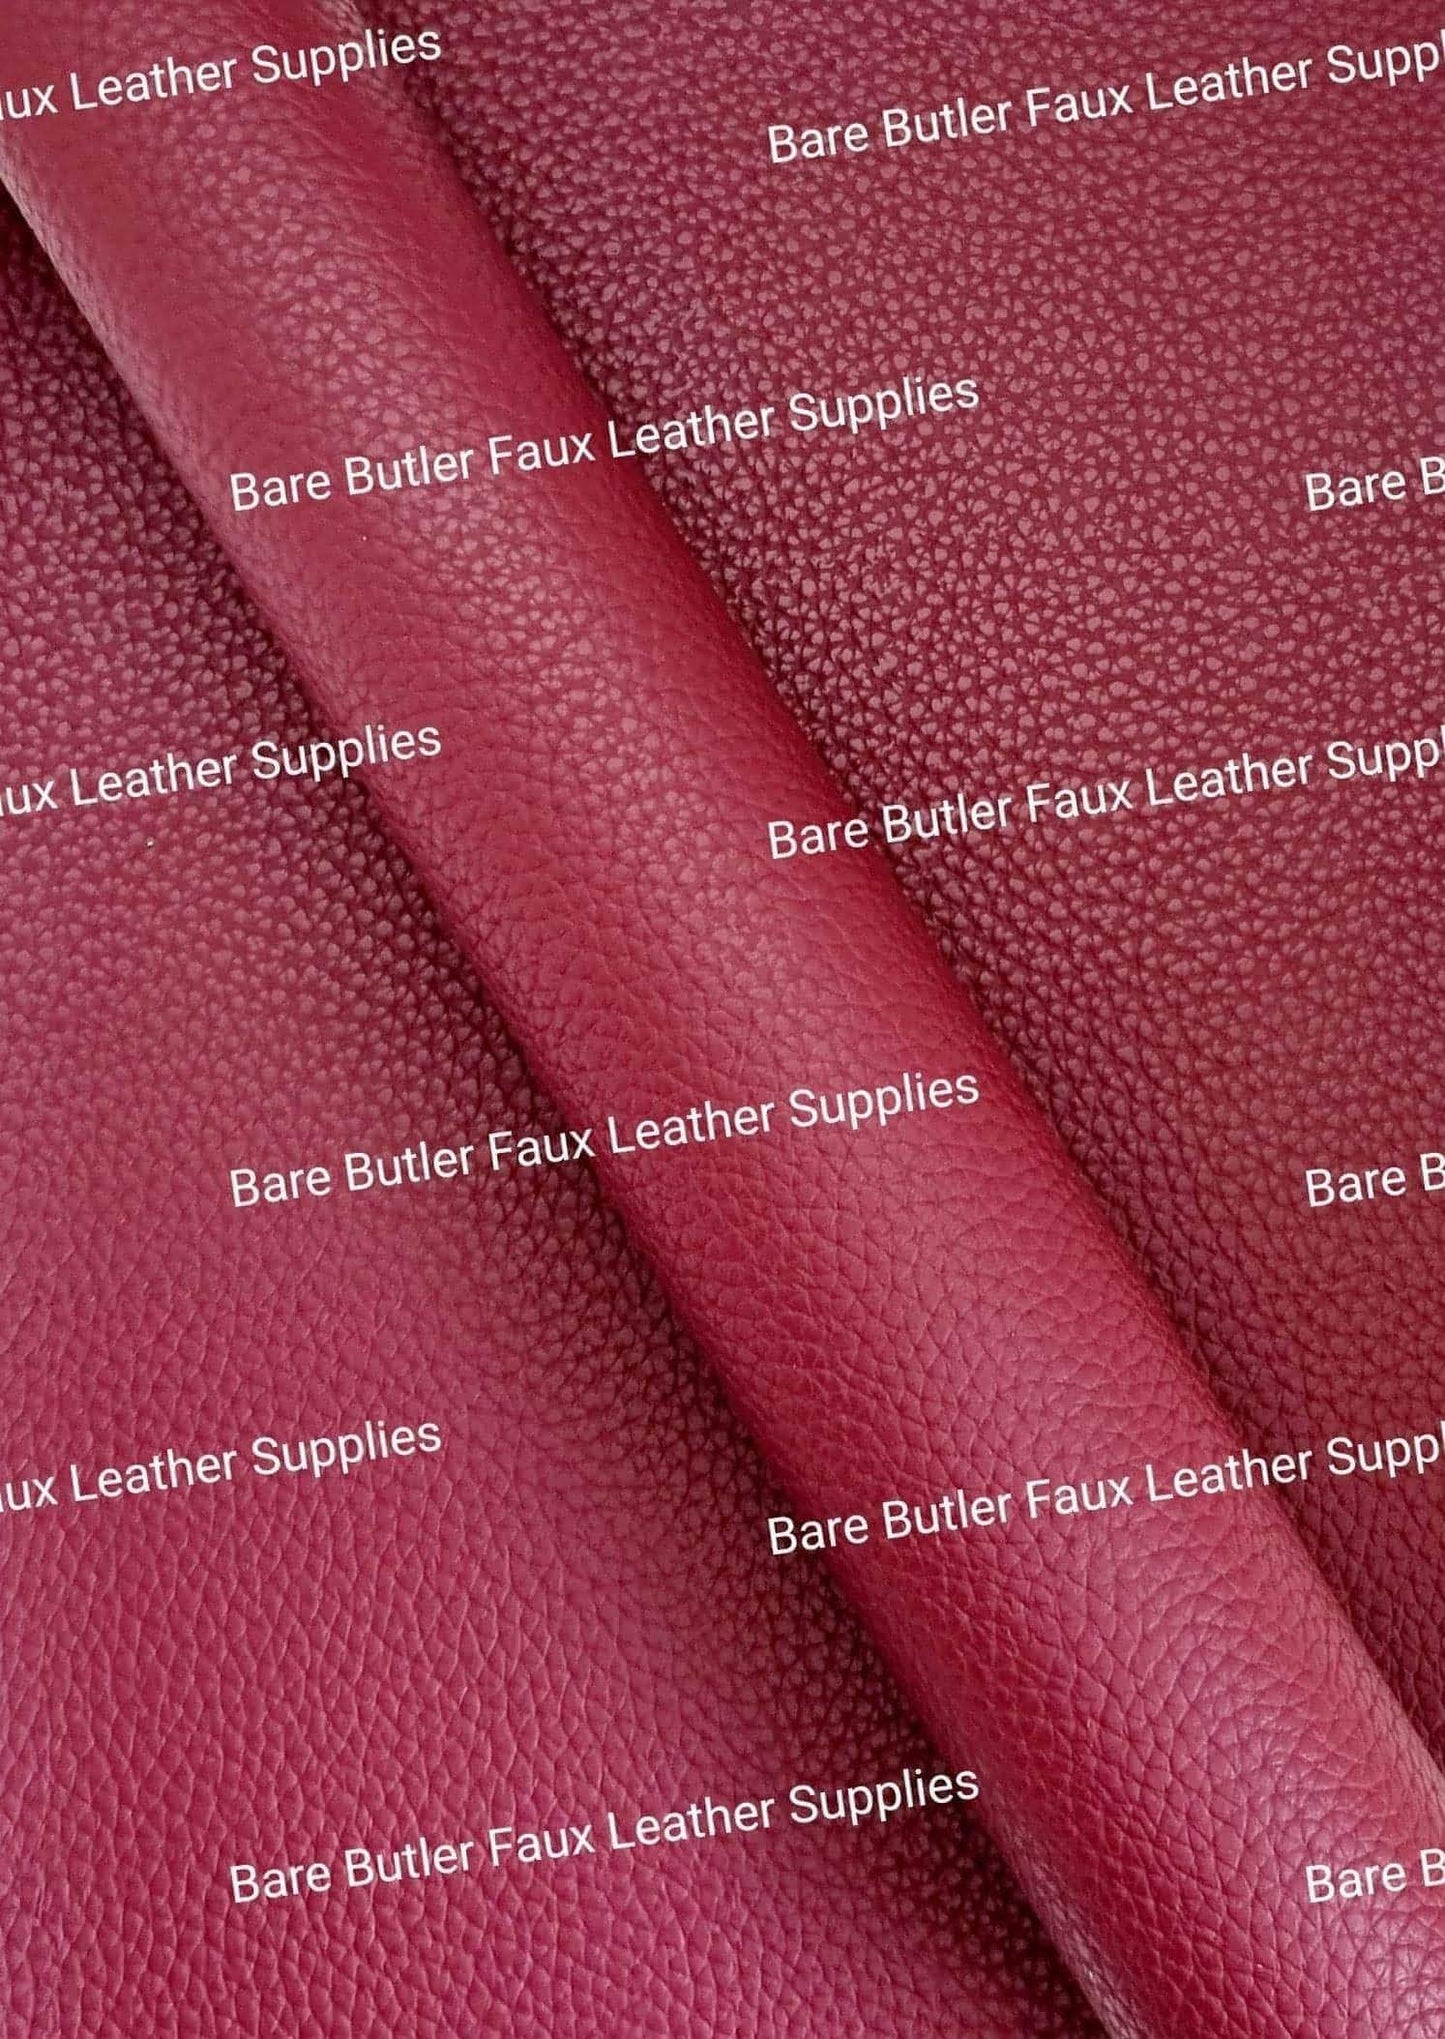 Solid Colour Litchi - Mahogany - Colour, Faux, Faux Leather, Leather, leatherette, Mahogany, red, Solid - Bare Butler Faux Leather Supplies 